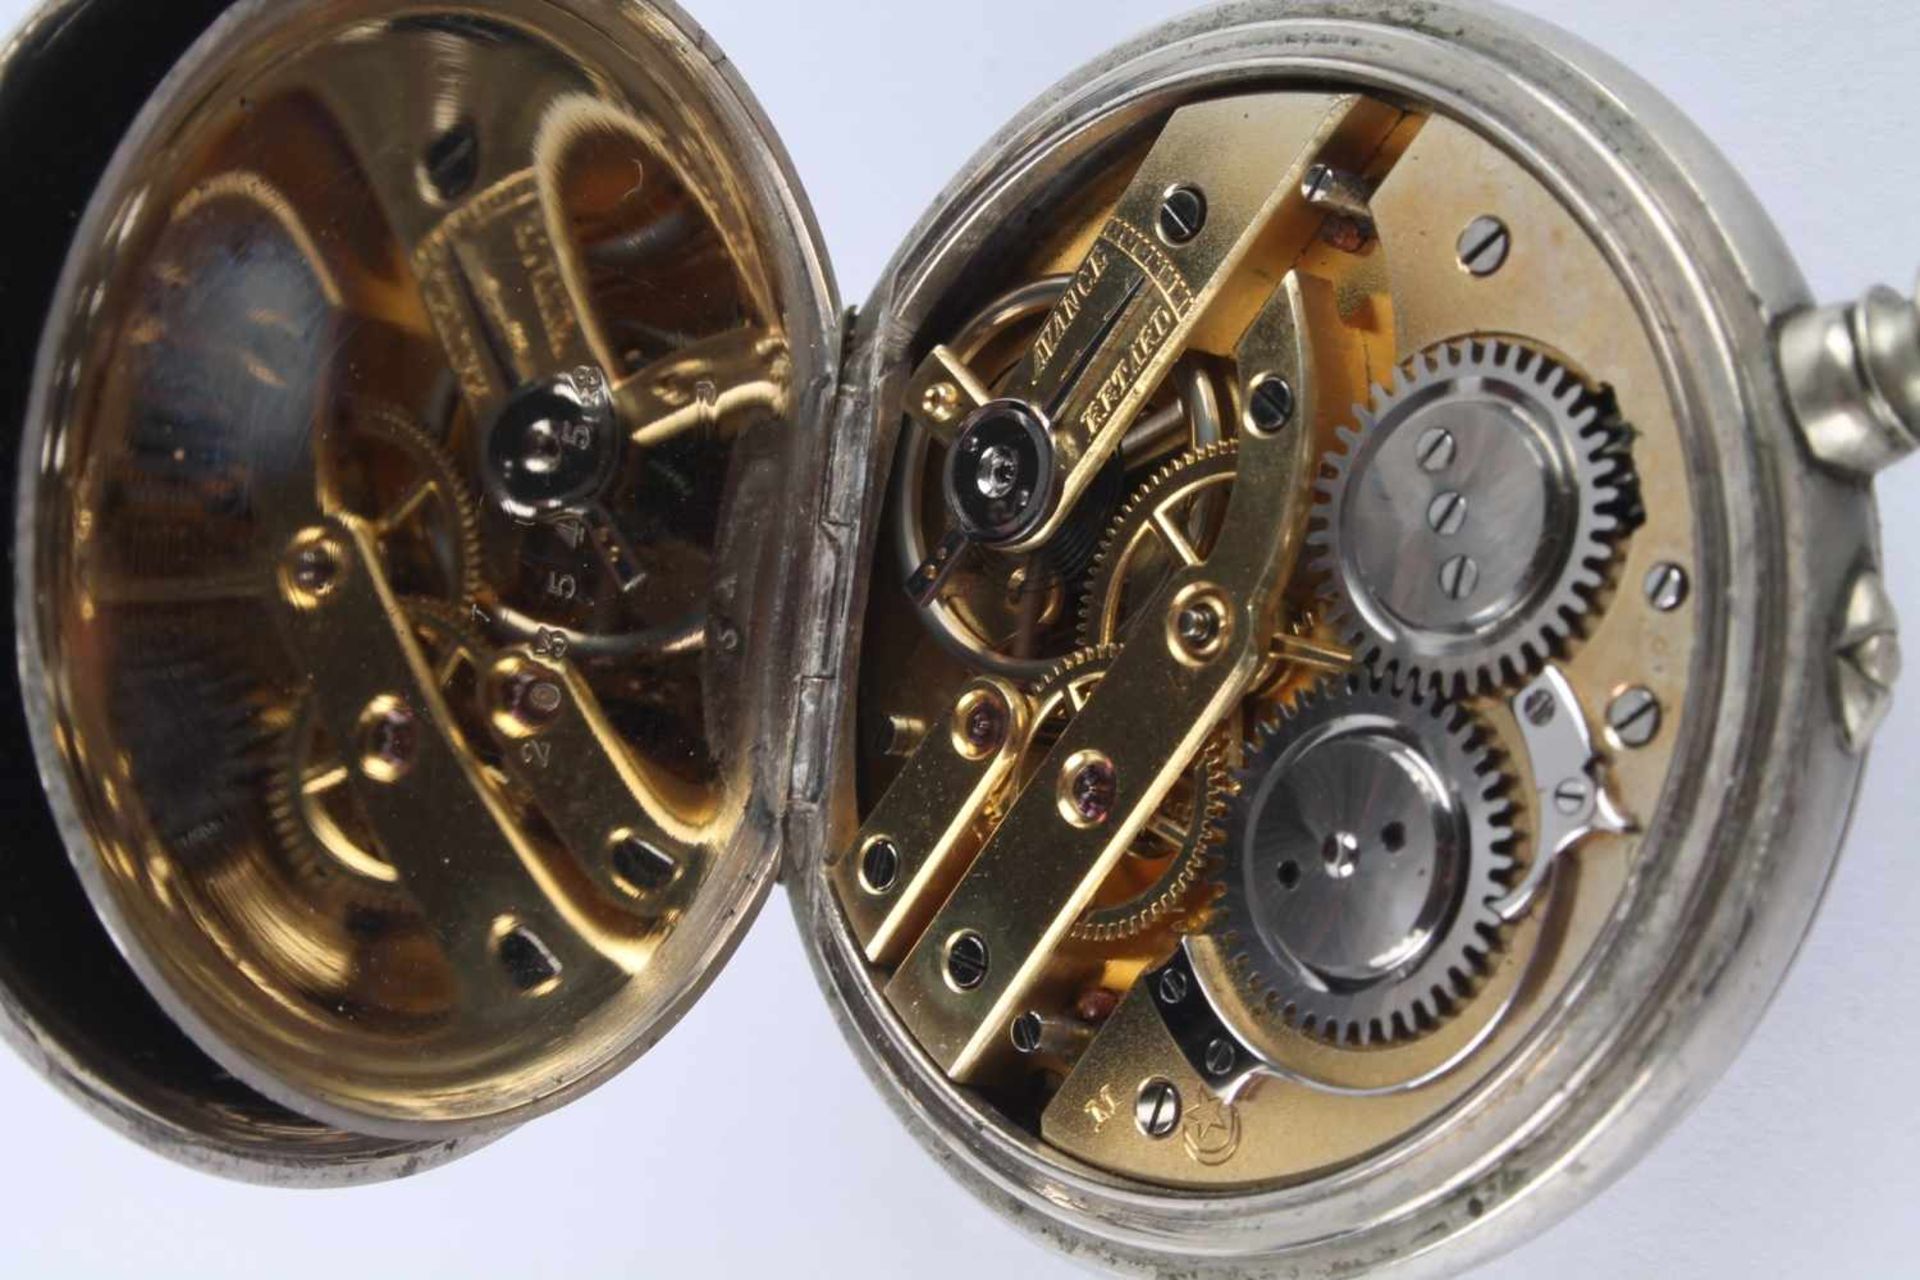 Jugendstil Taschenuhr, art nouveau pocket watch, - Image 5 of 5